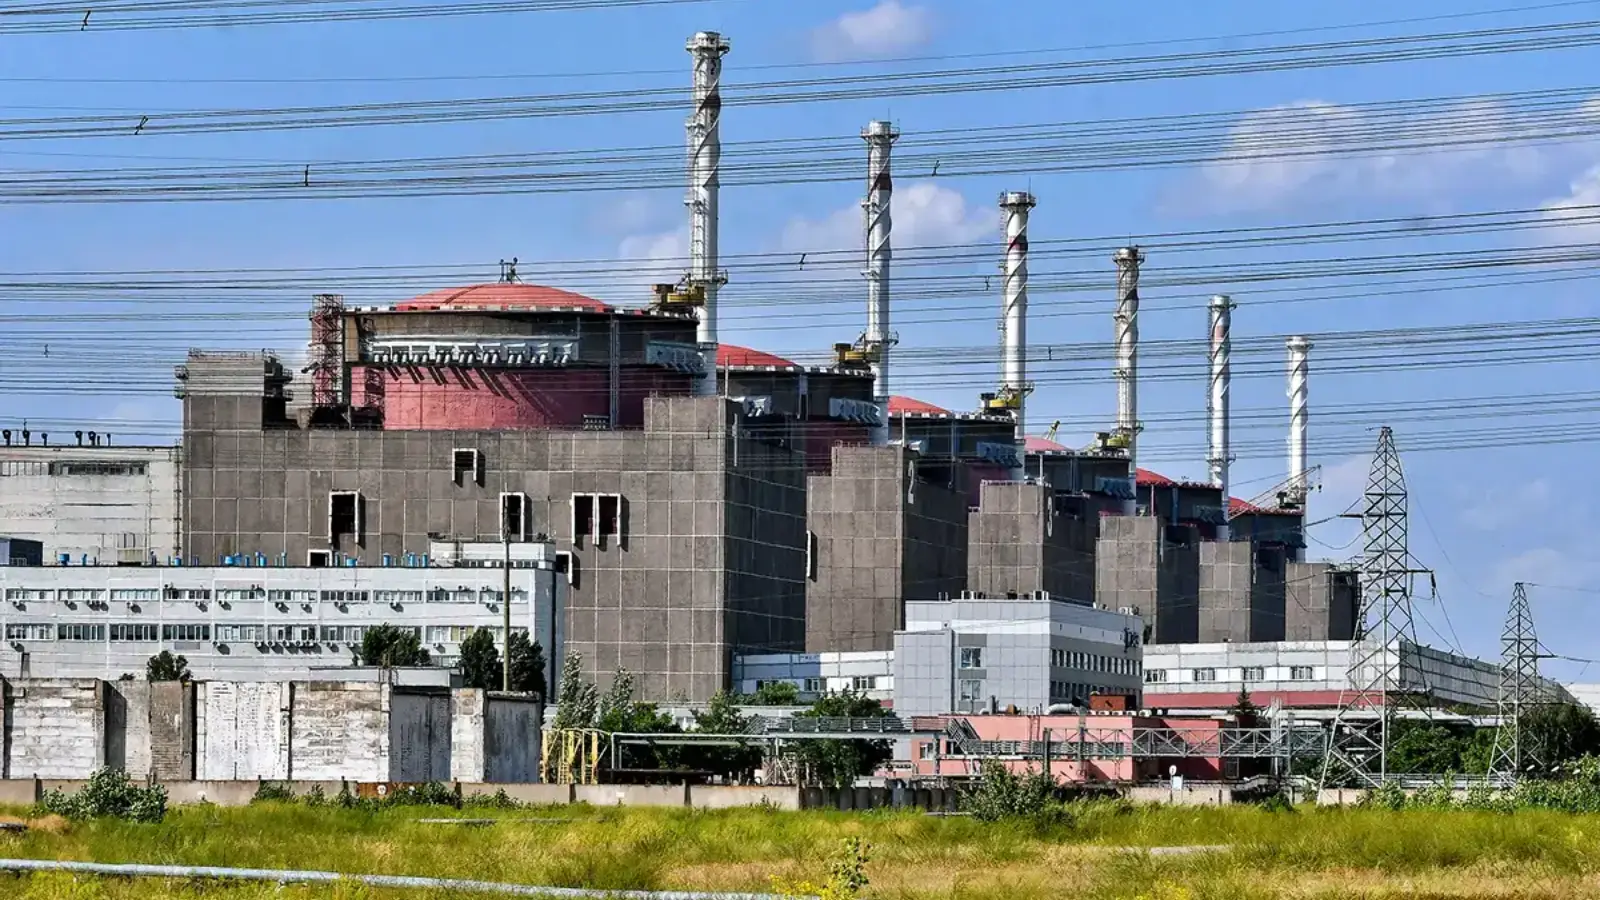 Vestile Ingrijoratoare Privind Centarala Nucleara ale Zaporojie, Planul Rusiei